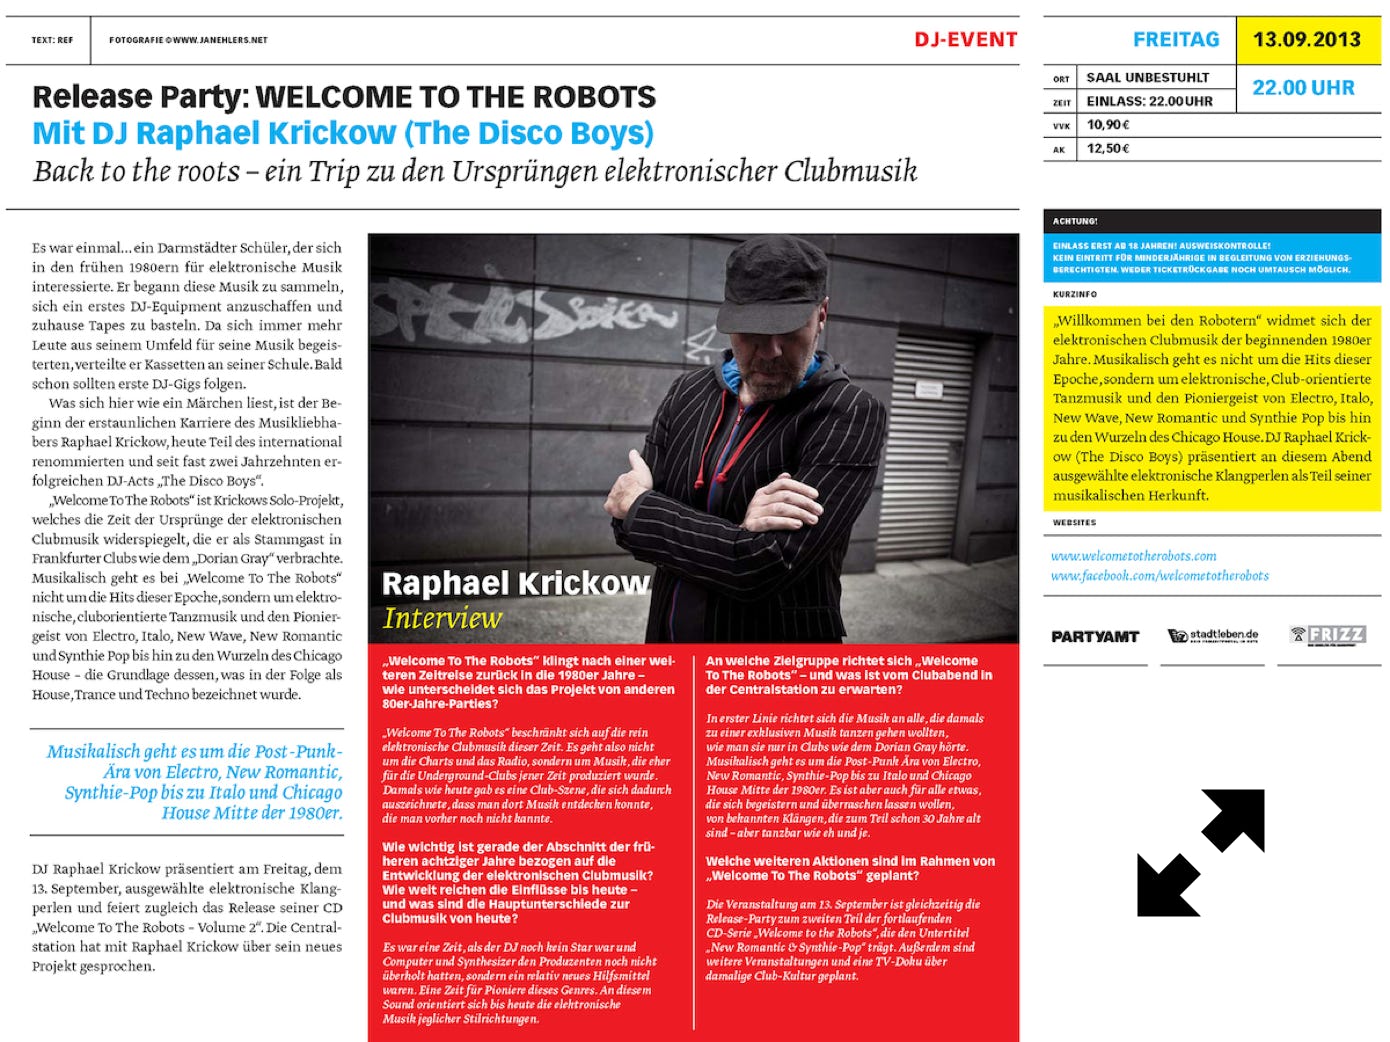 Welcome To The Robots, BACK TO THE ROOTS | CENTRALSTATION MAGAZIN | 13.09.2013, Ein Trip zu den Ursprüngen elektronischer Clubmusik